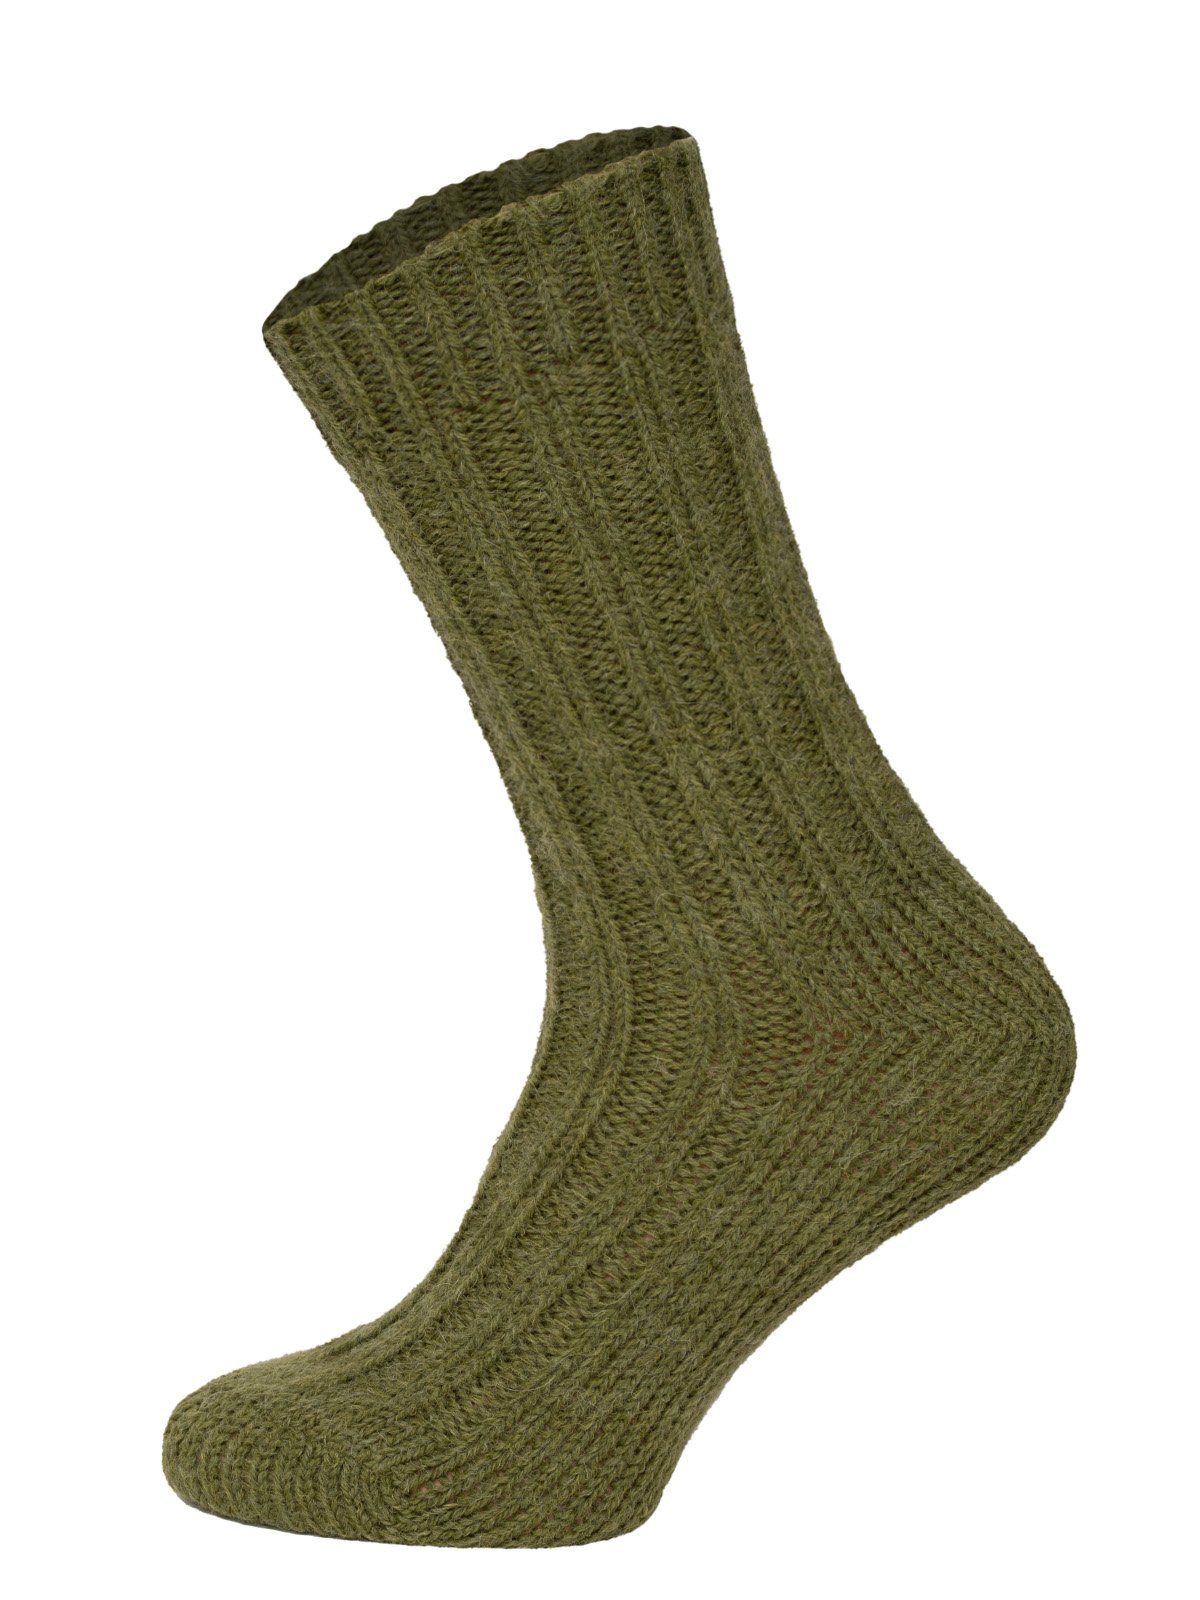 HomeOfSocks Socken Olive warme Socken und und Alpakawolle mit Bunte Alpakawolle mit 40% Wollanteil Wolle Umschlag mit Socken und Strapazierfähige